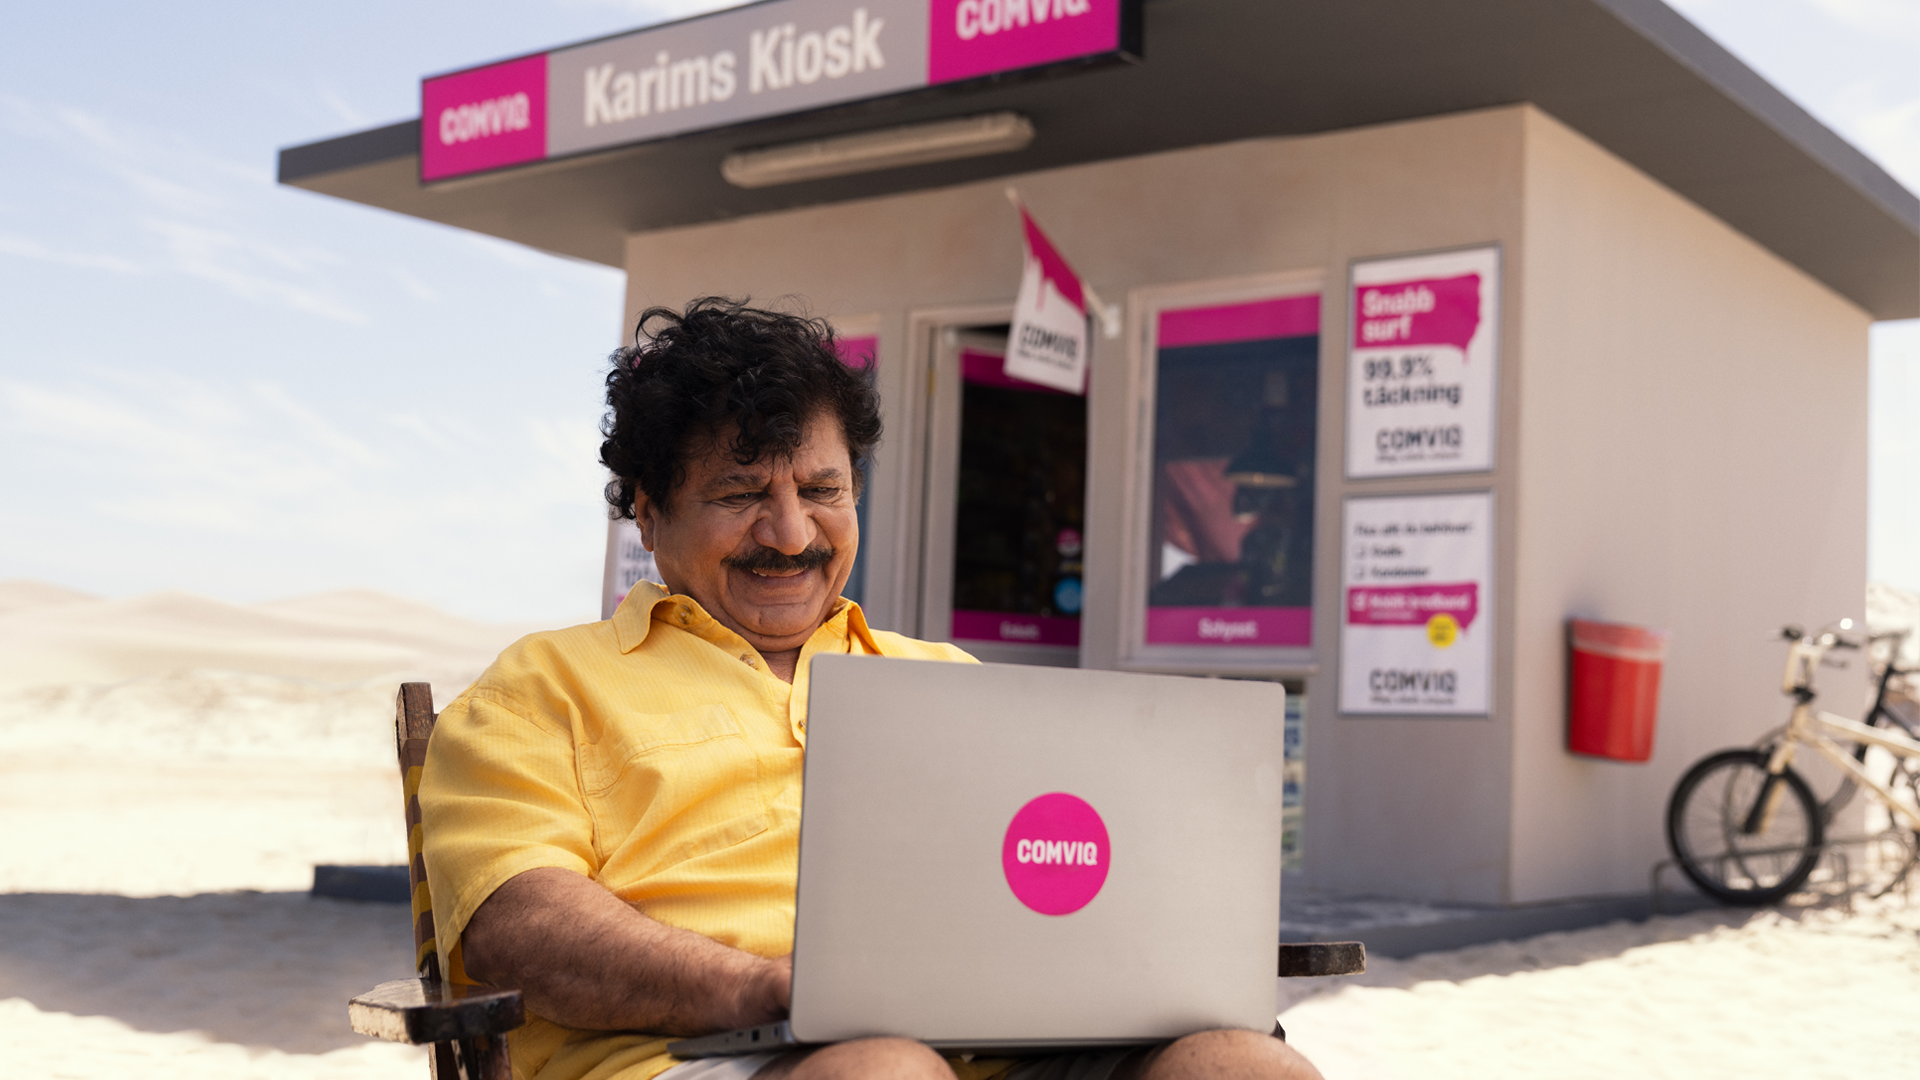 Karim sitter med sin laptop i knät utanför Comviq-kiosken och ser nöjd ut